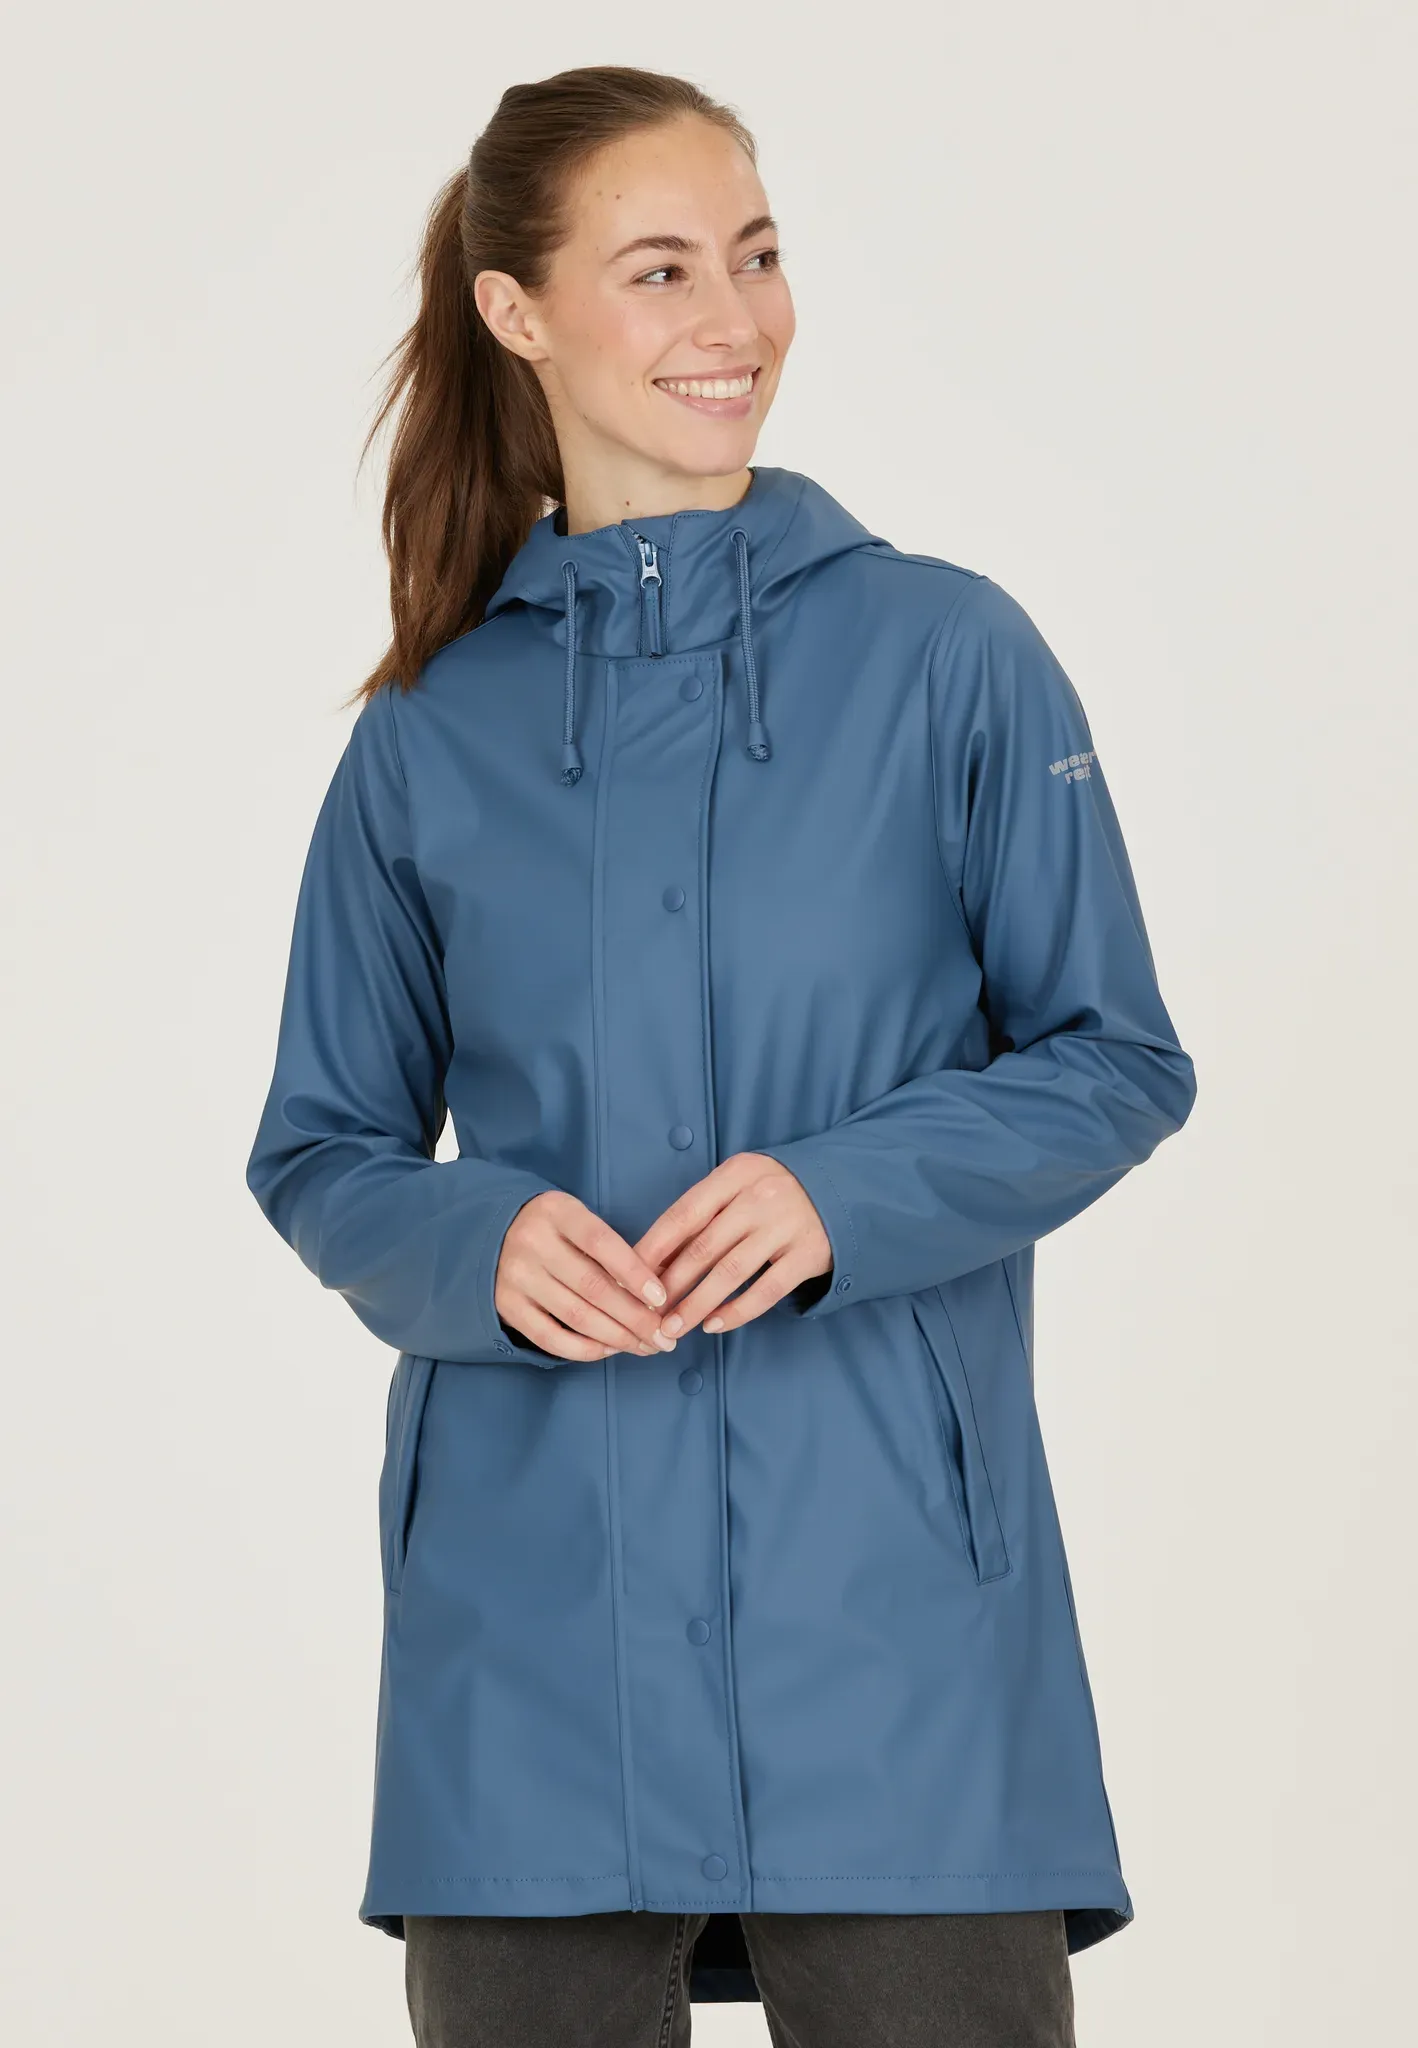 Regenjacke WEATHER REPORT "PETRA" Gr. 44, blau Damen Jacken Sportjacken mit umweltfreundlicher Beschichtung